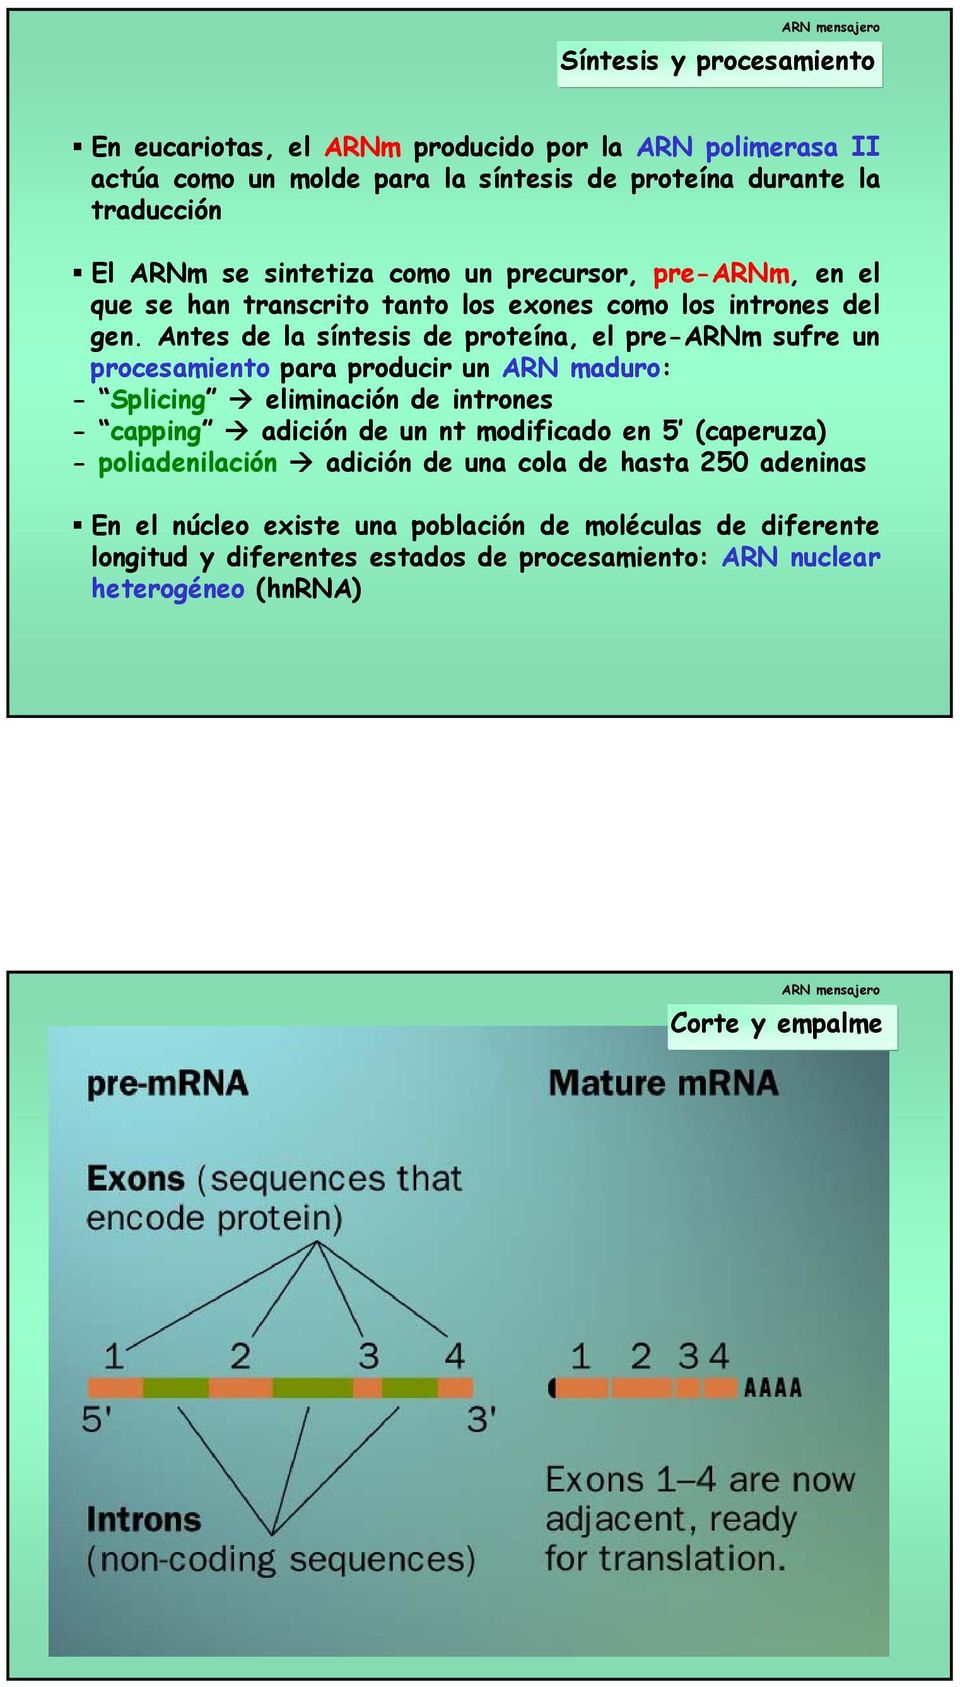 Antes de la síntesis de proteína, el pre-arnm sufre un procesamiento para producir un ARN maduro: - Splicing eliminación de intrones - capping adición de un nt modificado en 5